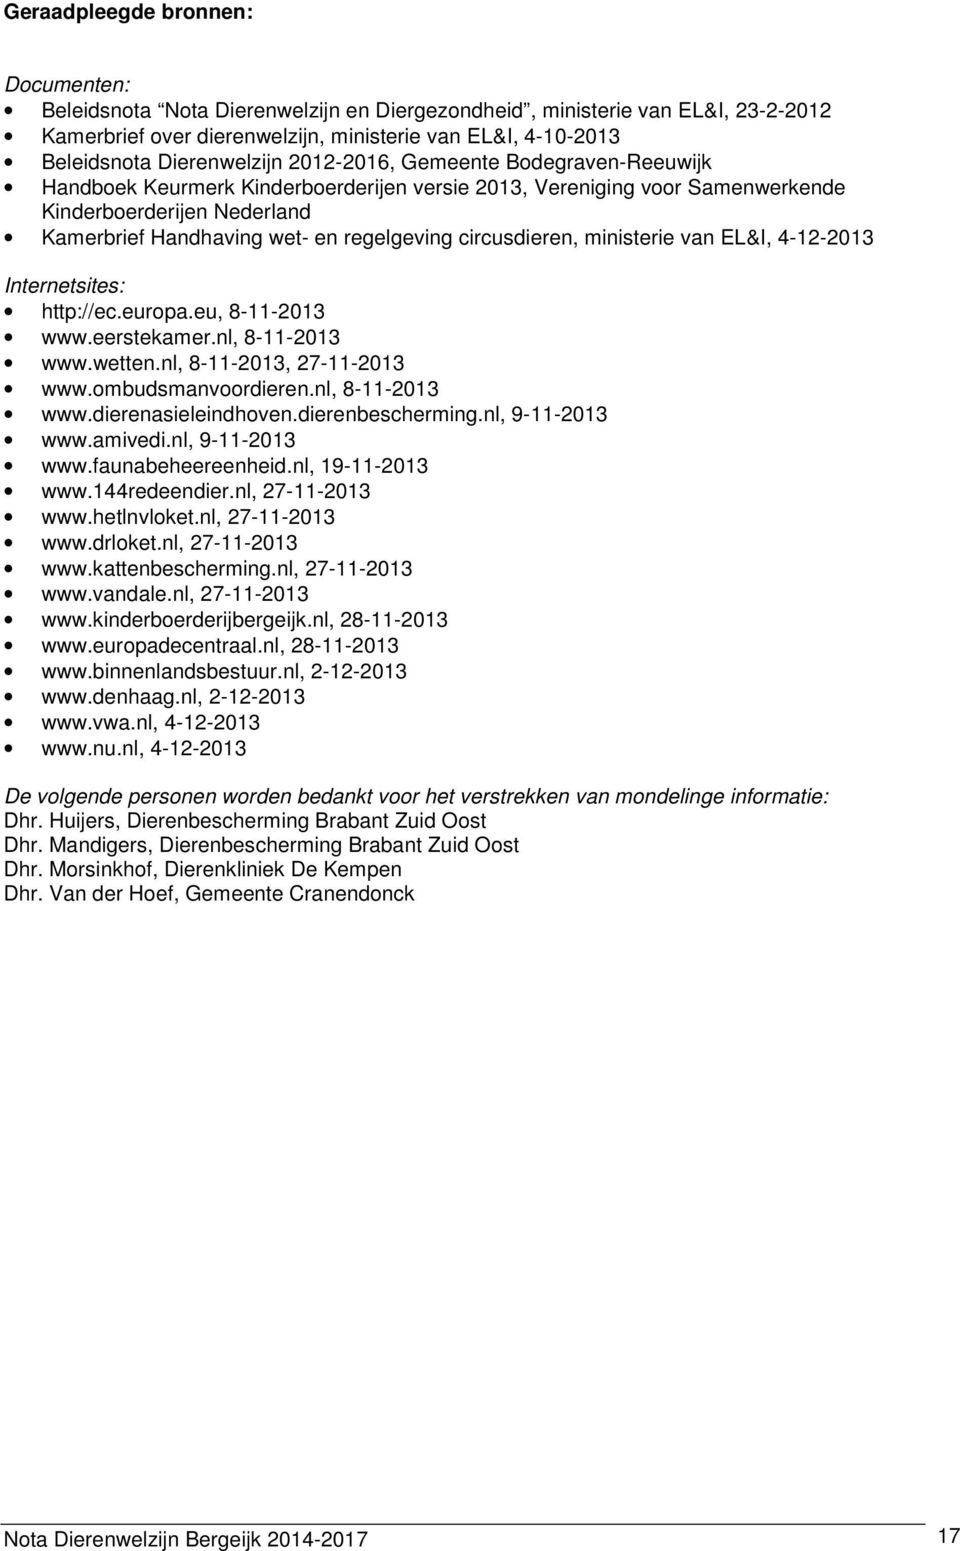 regelgeving circusdieren, ministerie van EL&I, 4-12-2013 Internetsites: http://ec.europa.eu, 8-11-2013 www.eerstekamer.nl, 8-11-2013 www.wetten.nl, 8-11-2013, 27-11-2013 www.ombudsmanvoordieren.